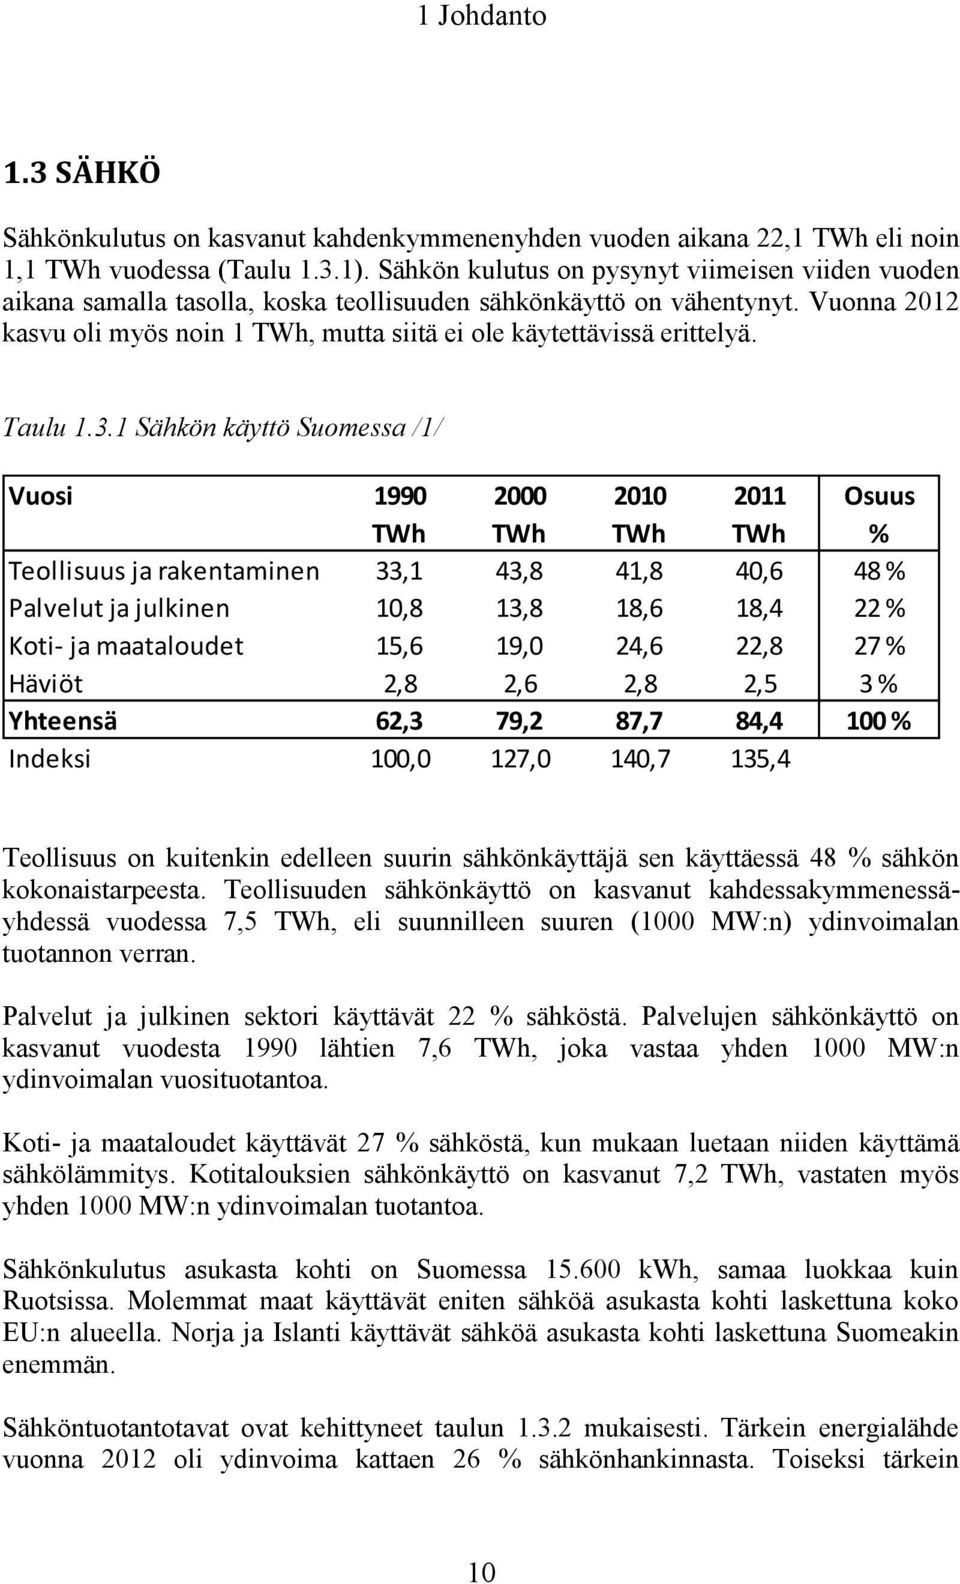 Vuonna 2012 kasvu oli myös noin 1 TWh, mutta siitä ei ole käytettävissä erittelyä. Taulu 1.3.